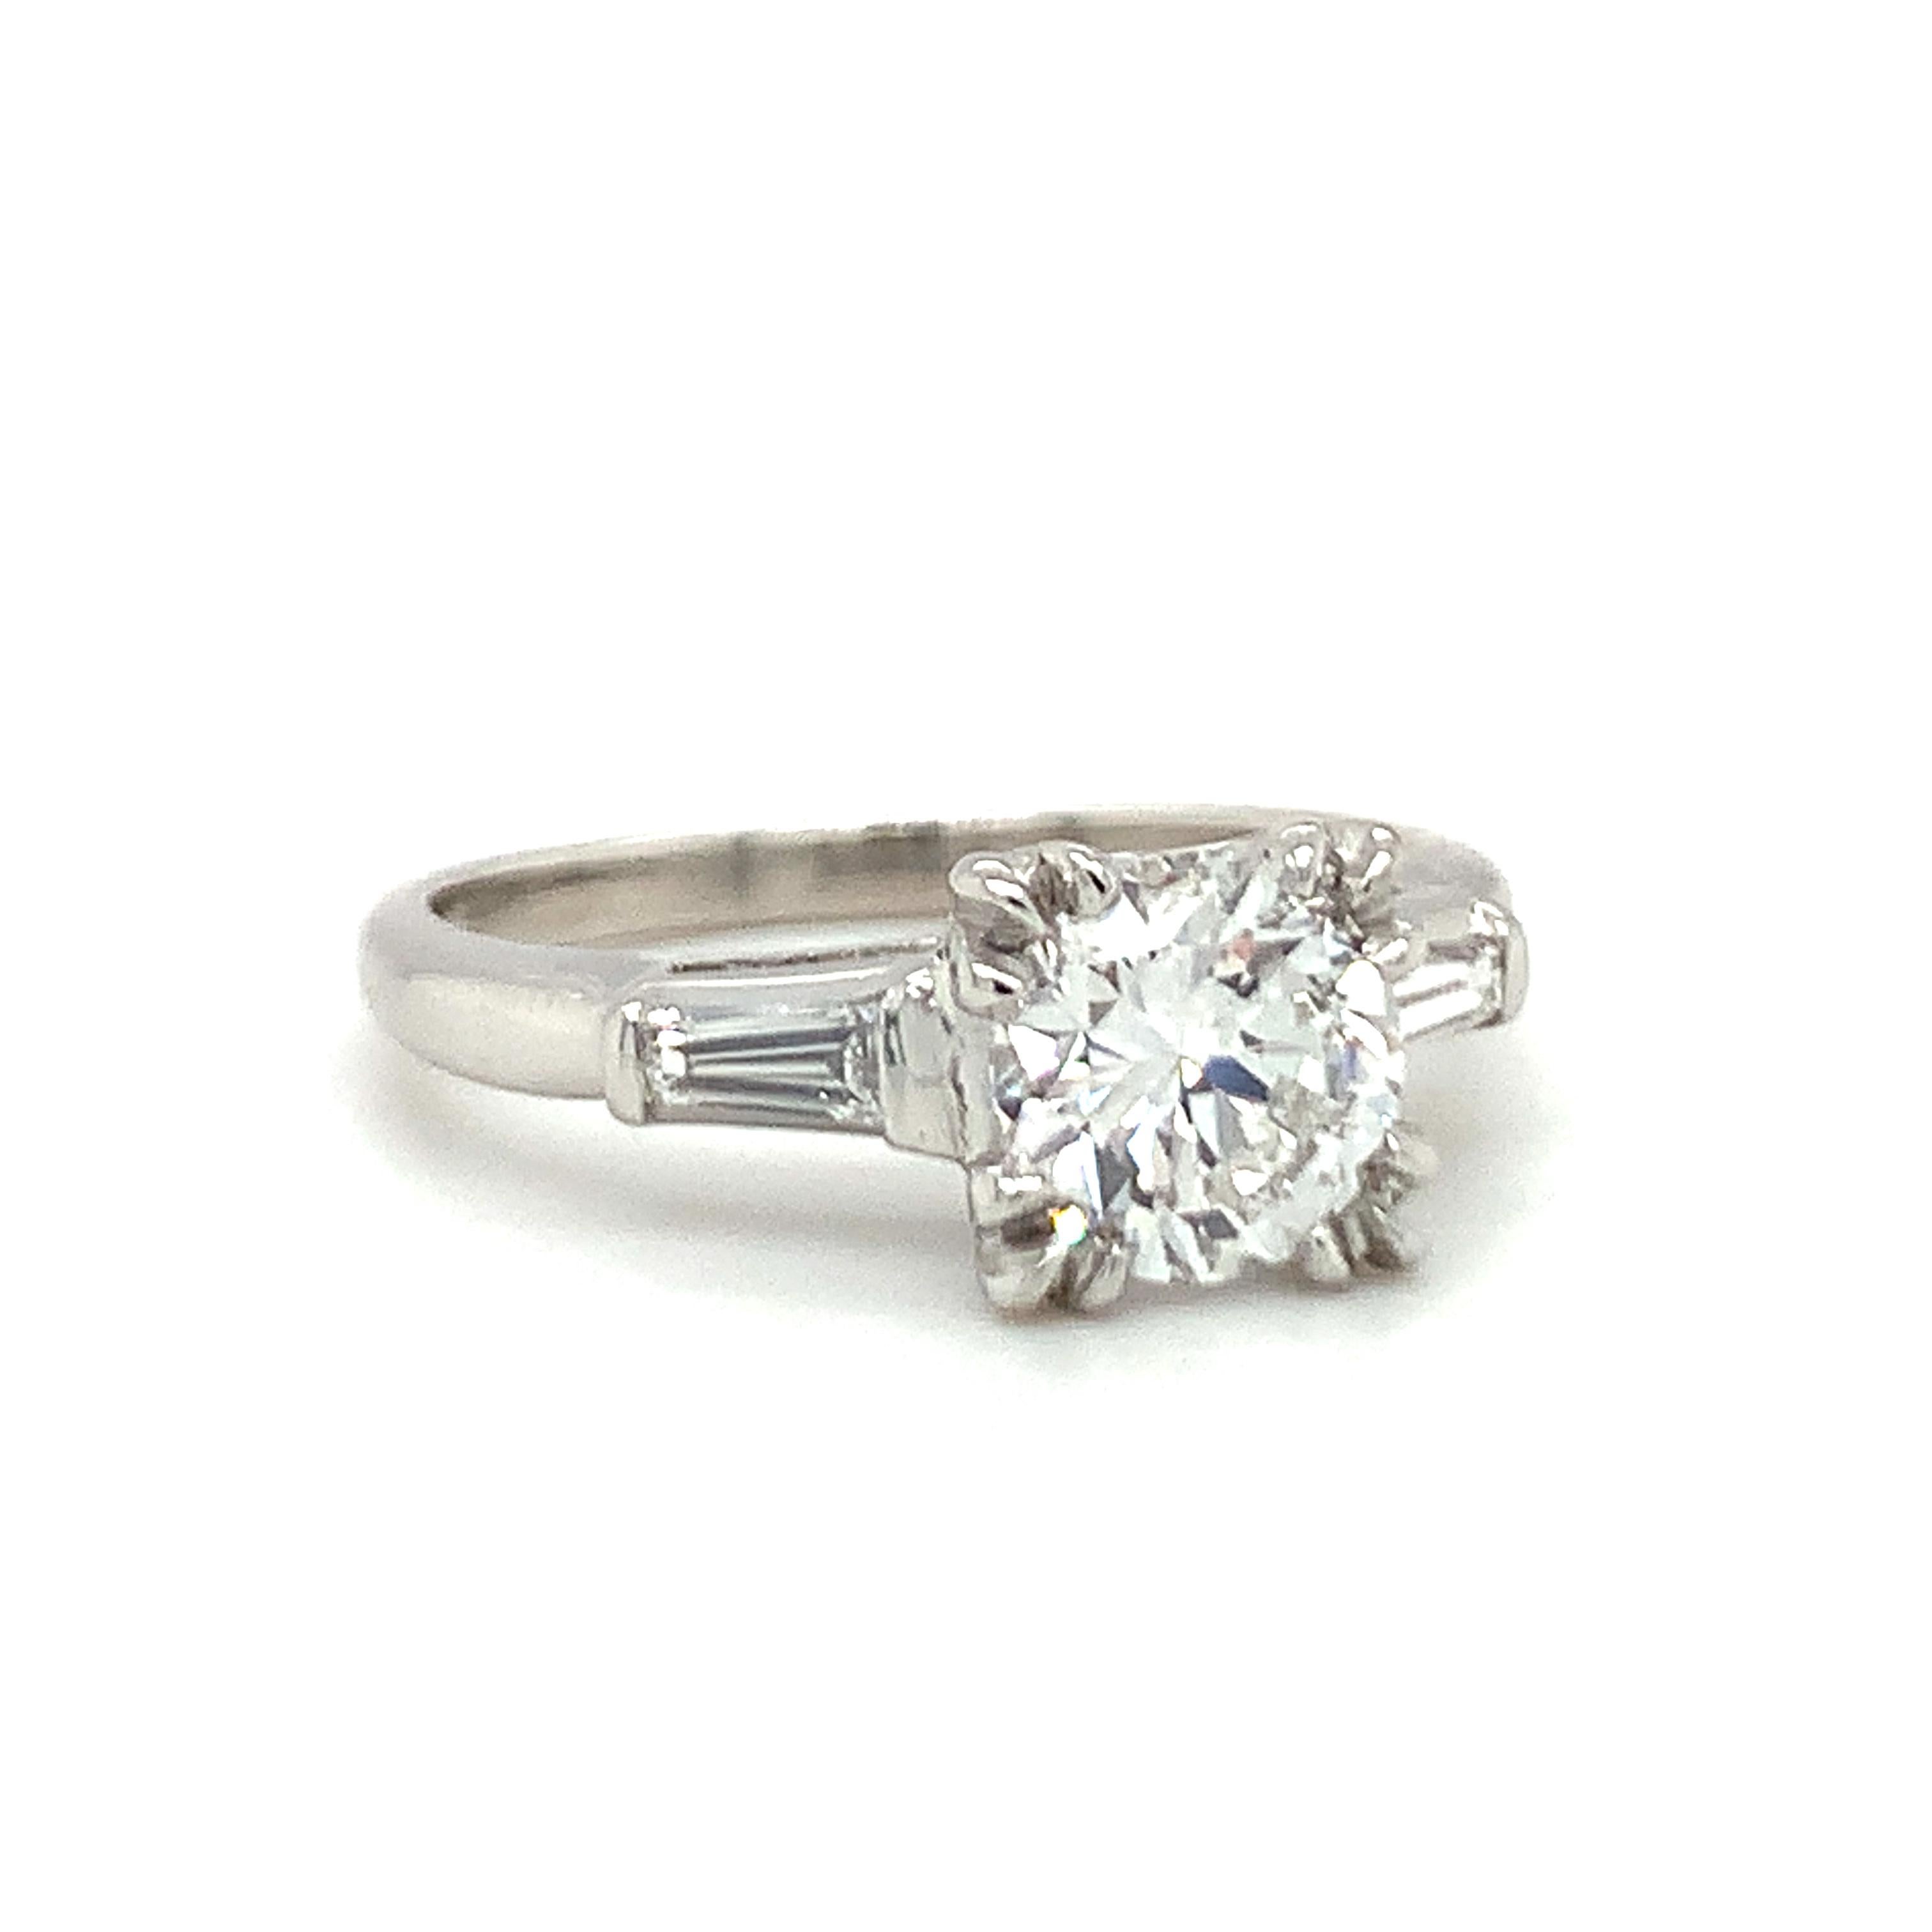 Ein GIA-zertifizierter Verlobungsring aus Platin mit einem 1,04-karätigen Diamanten im Brillantschliff mit einem Gewicht von 1,04 Karat, Farbe E und Reinheit VS-1. Der Hauptdiamant wird flankiert von zwei spitz zulaufenden Baguette-Diamanten mit